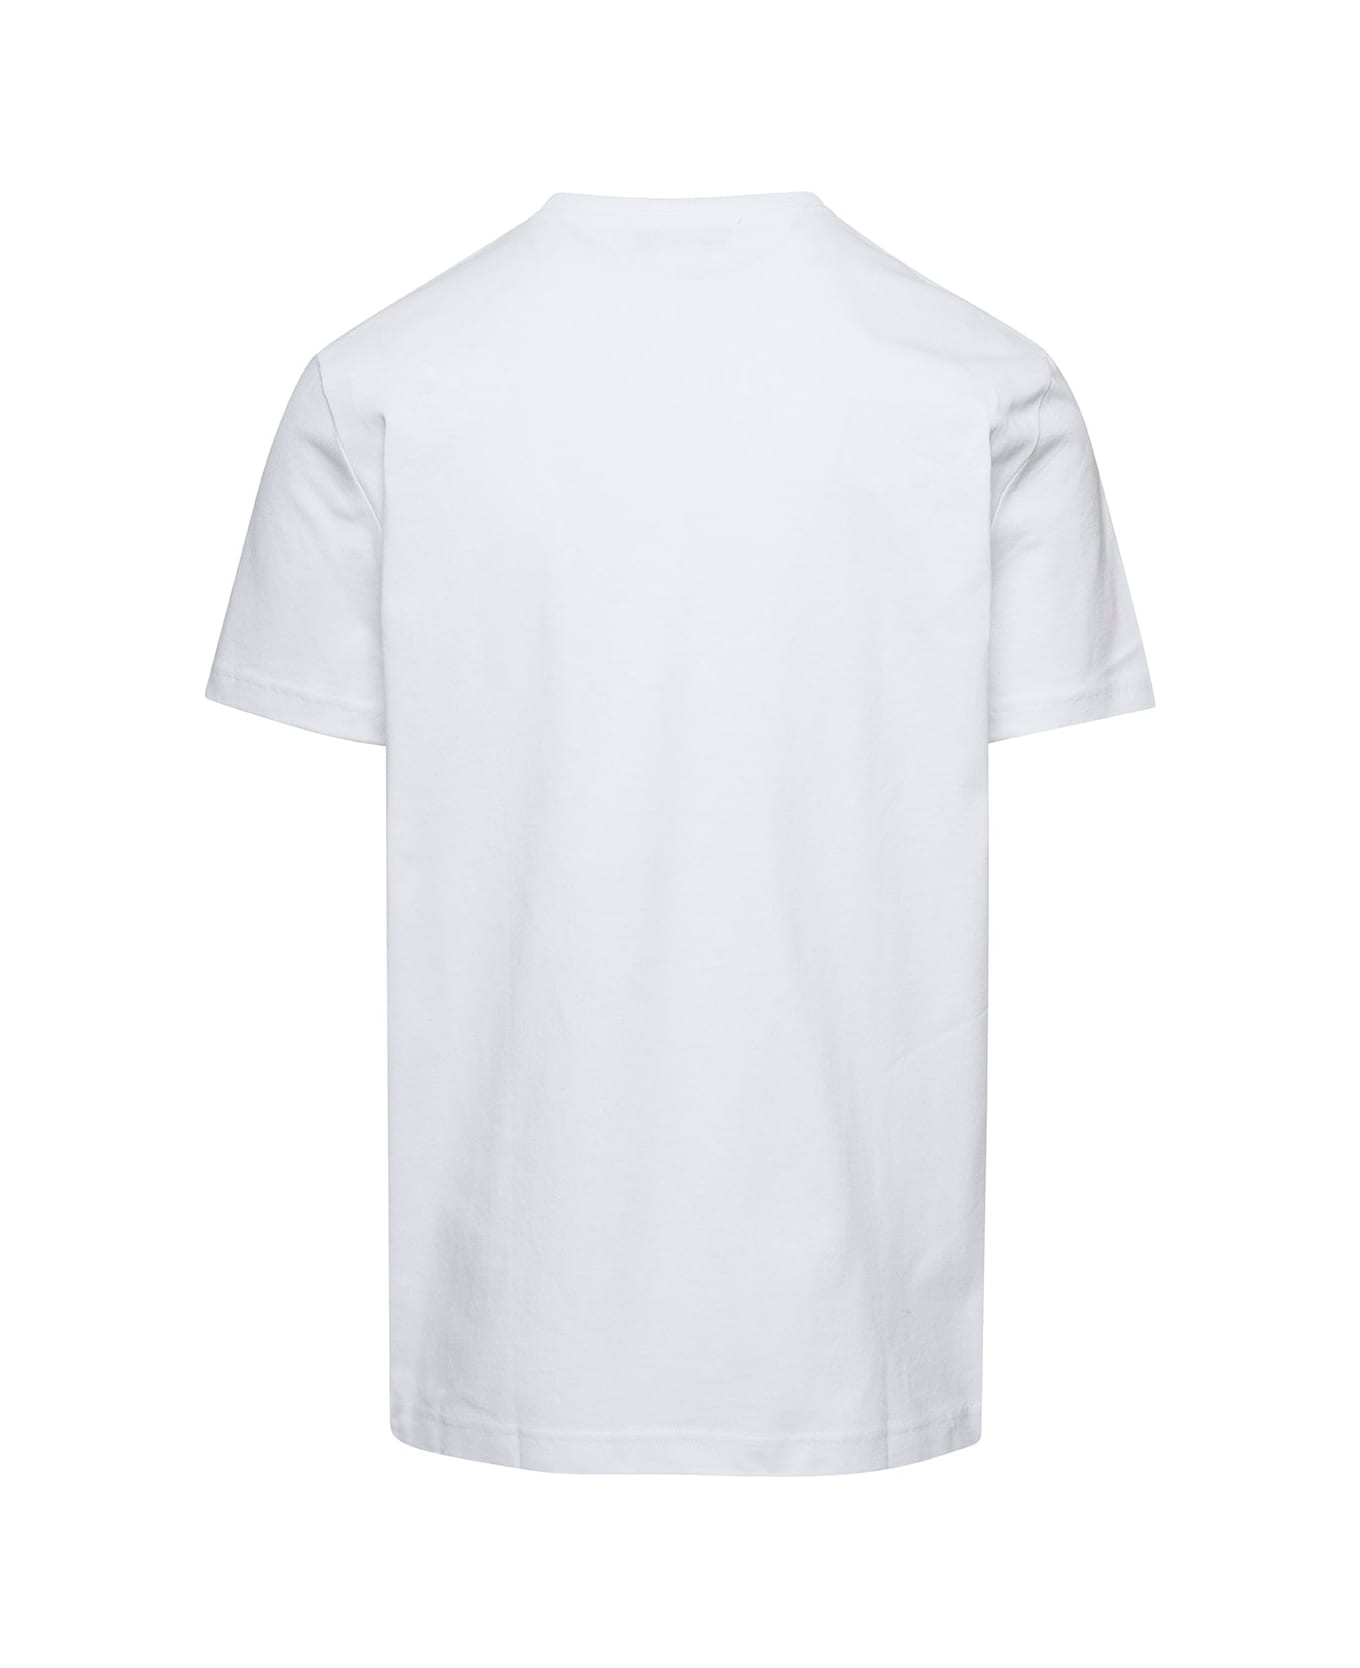 A.P.C. Anchor T-shirt - Blanc シャツ